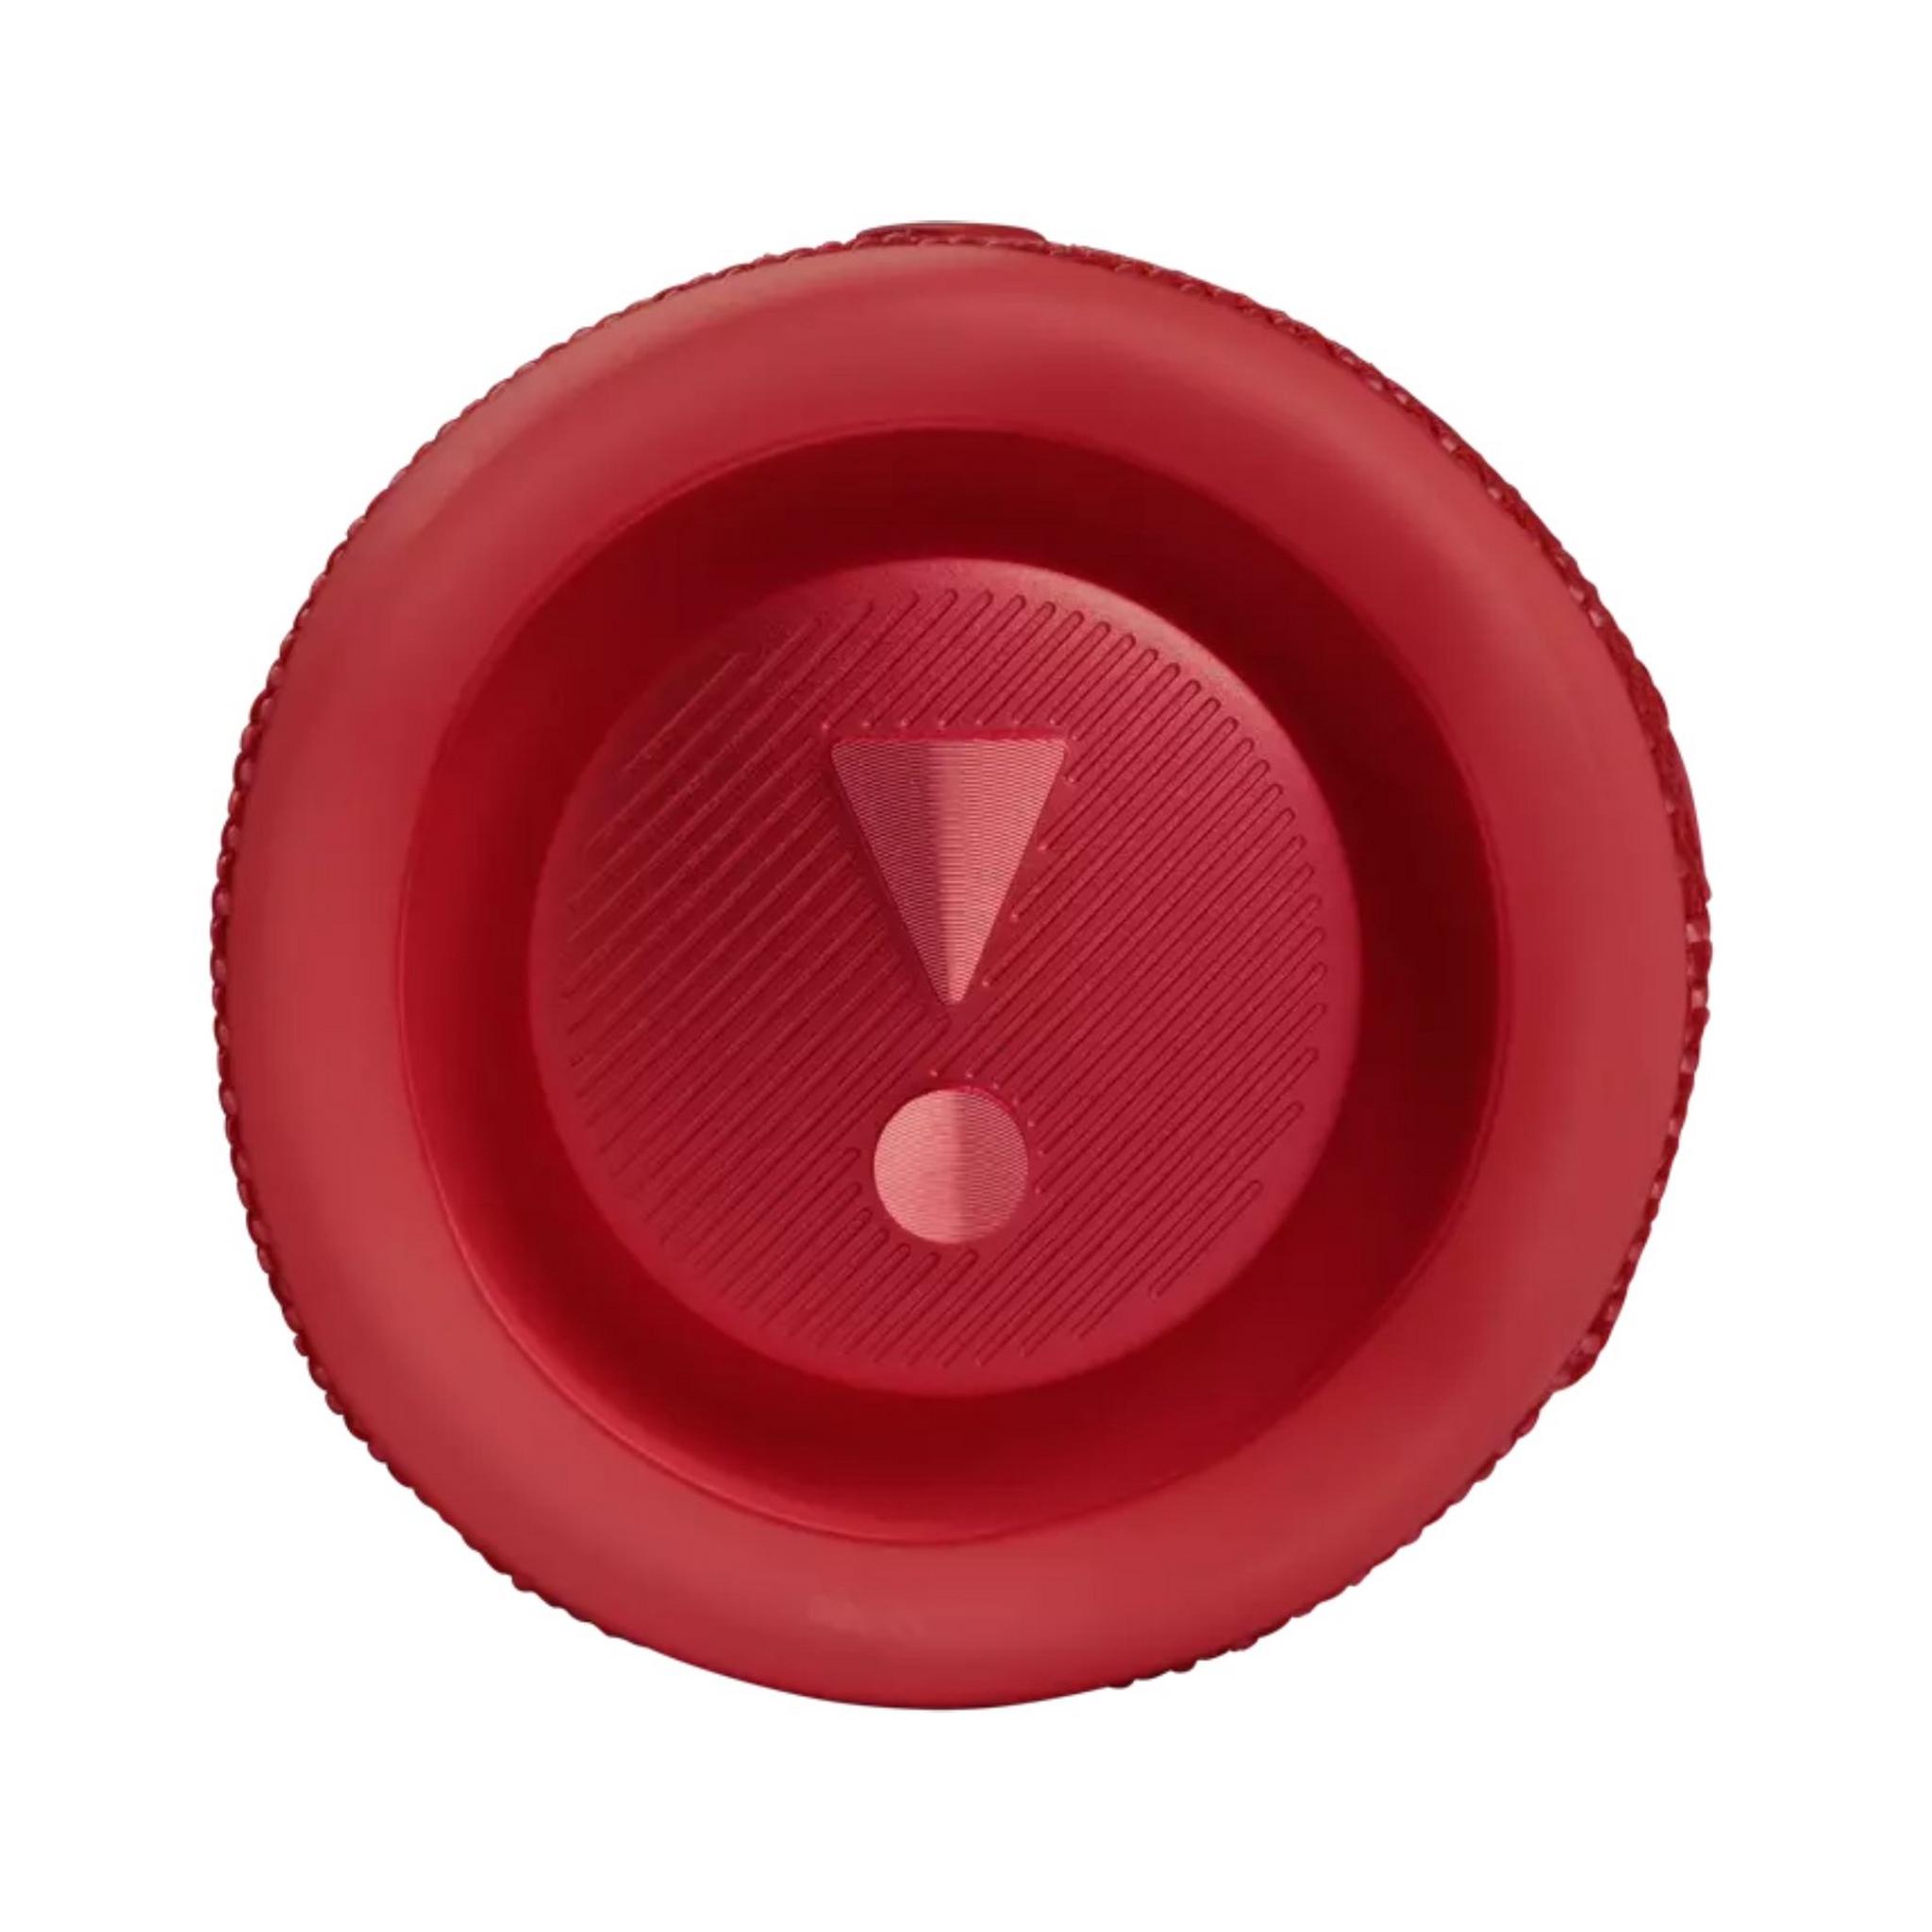 JBL Flip 6 Portable Waterproof Speaker - Red